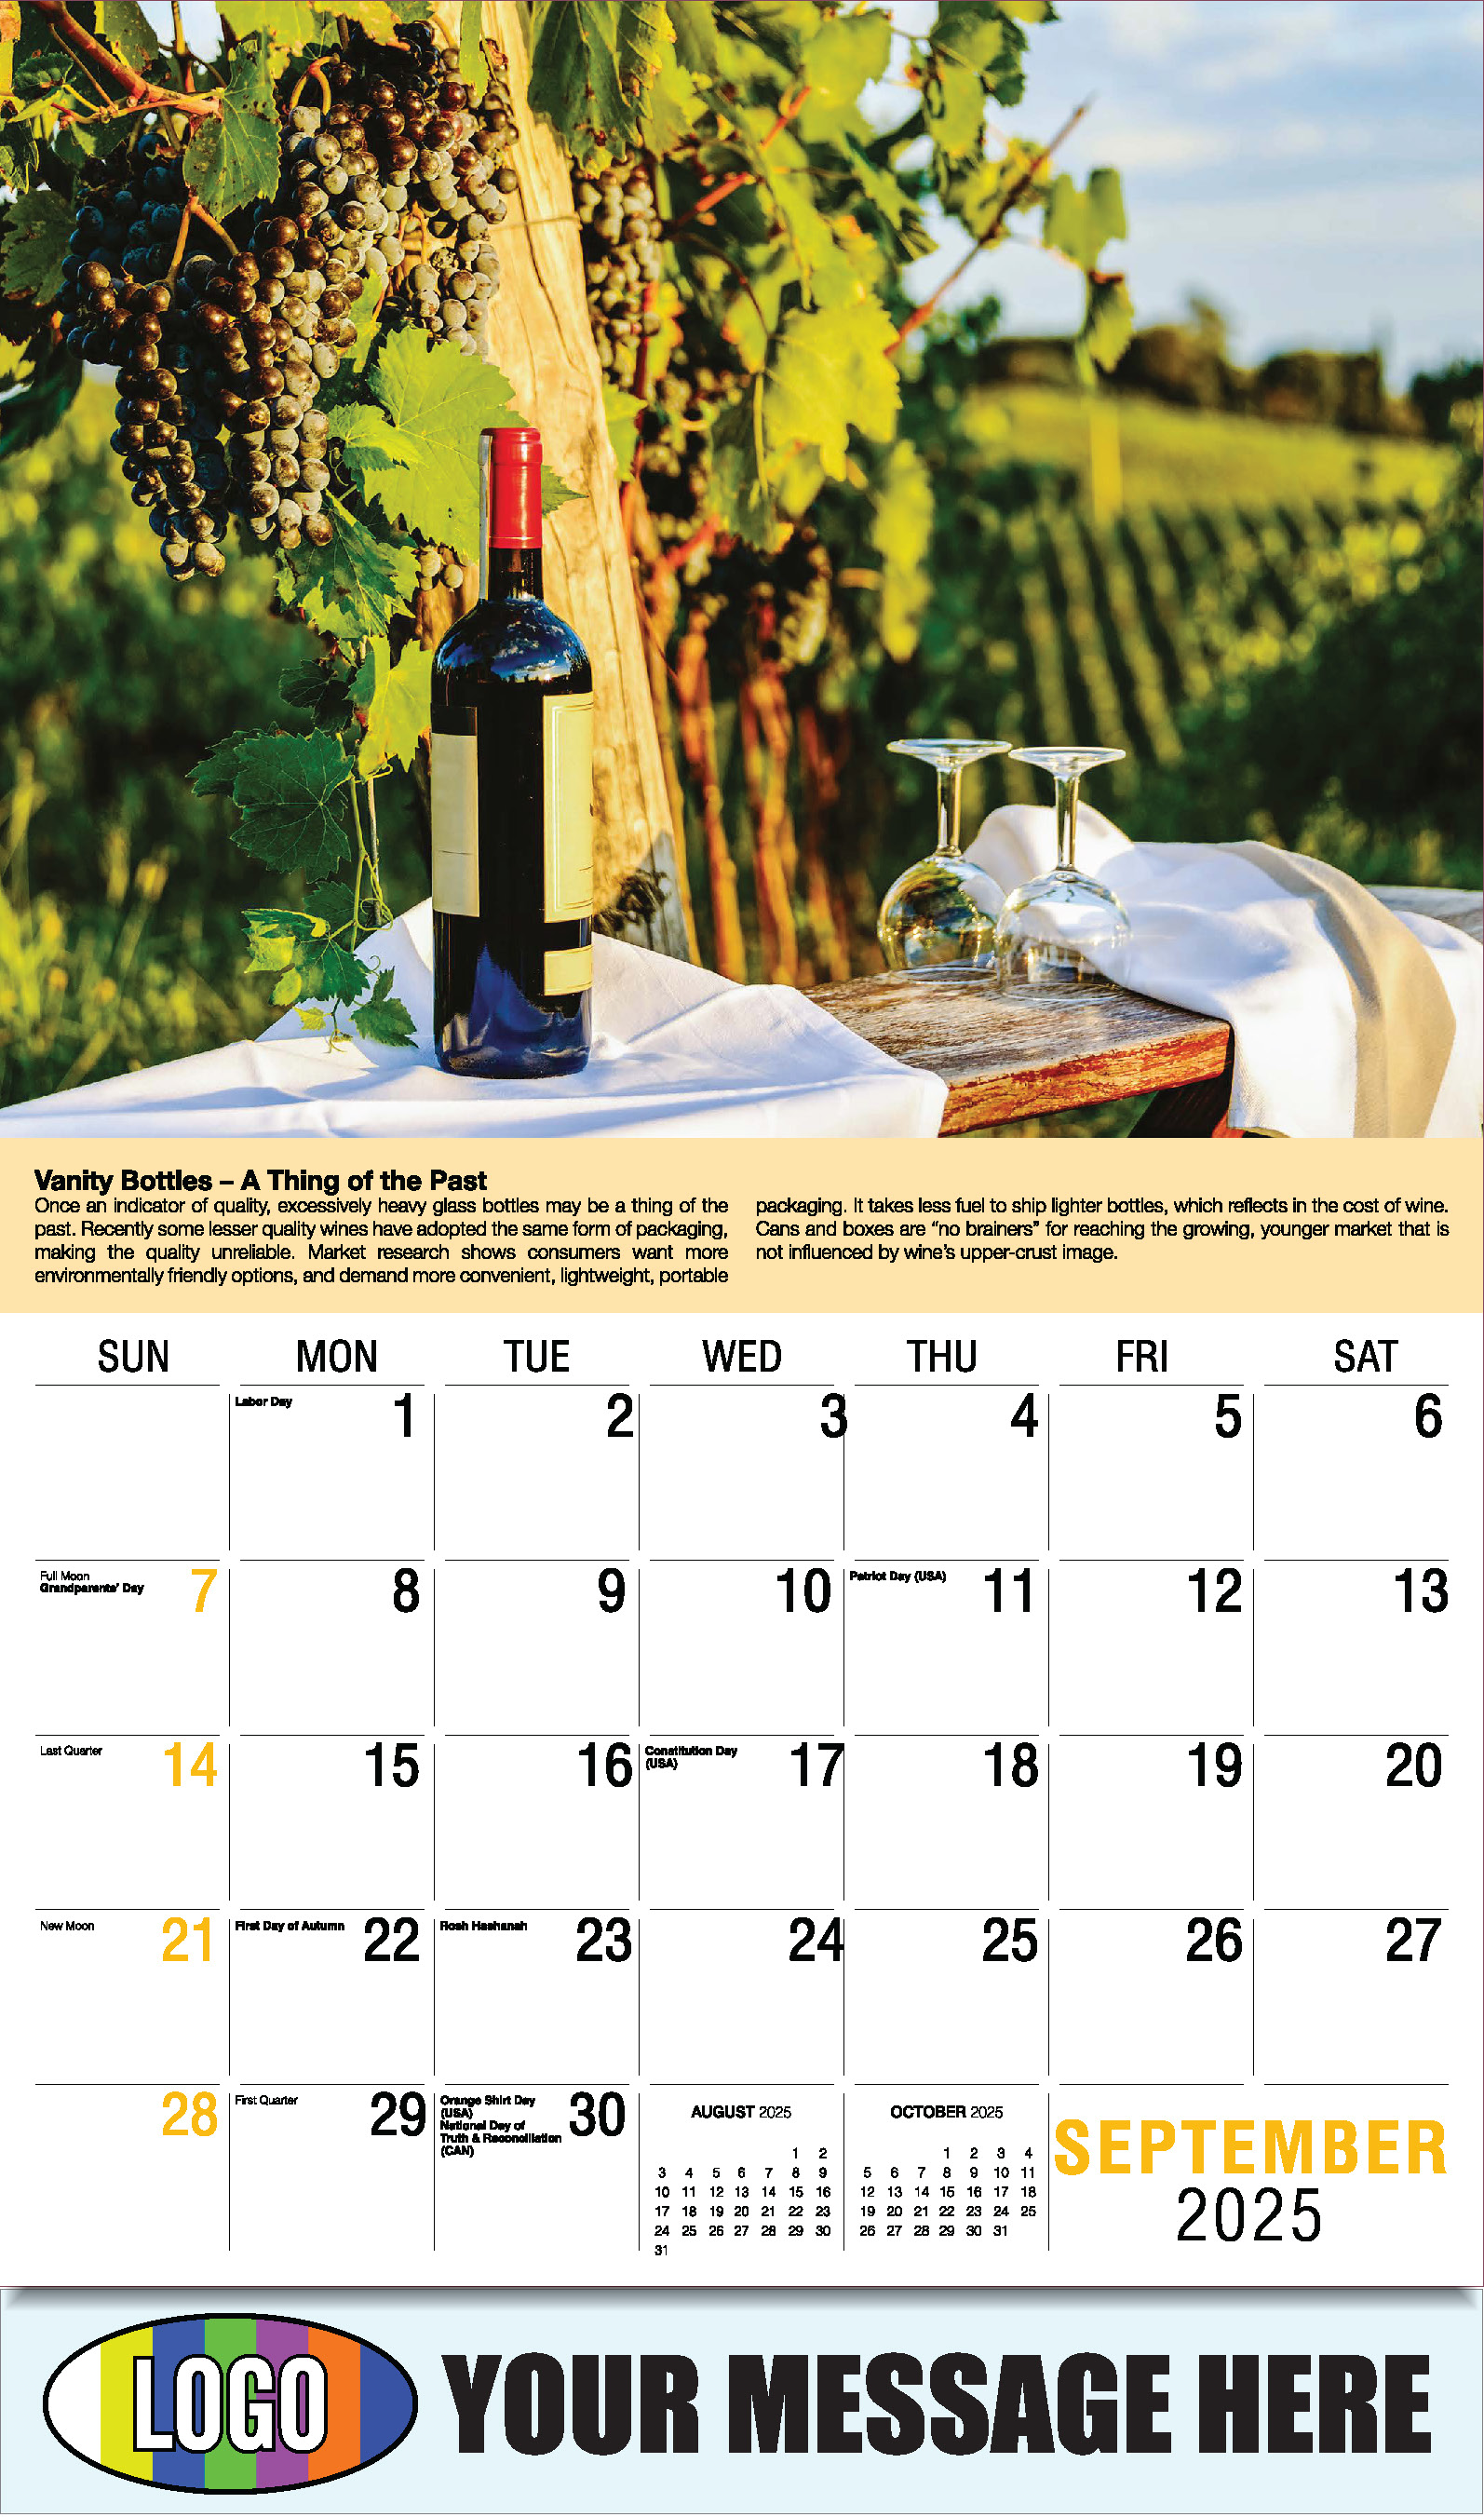 Vintages - Wine Tips 2025 Business Promo Calendar - September